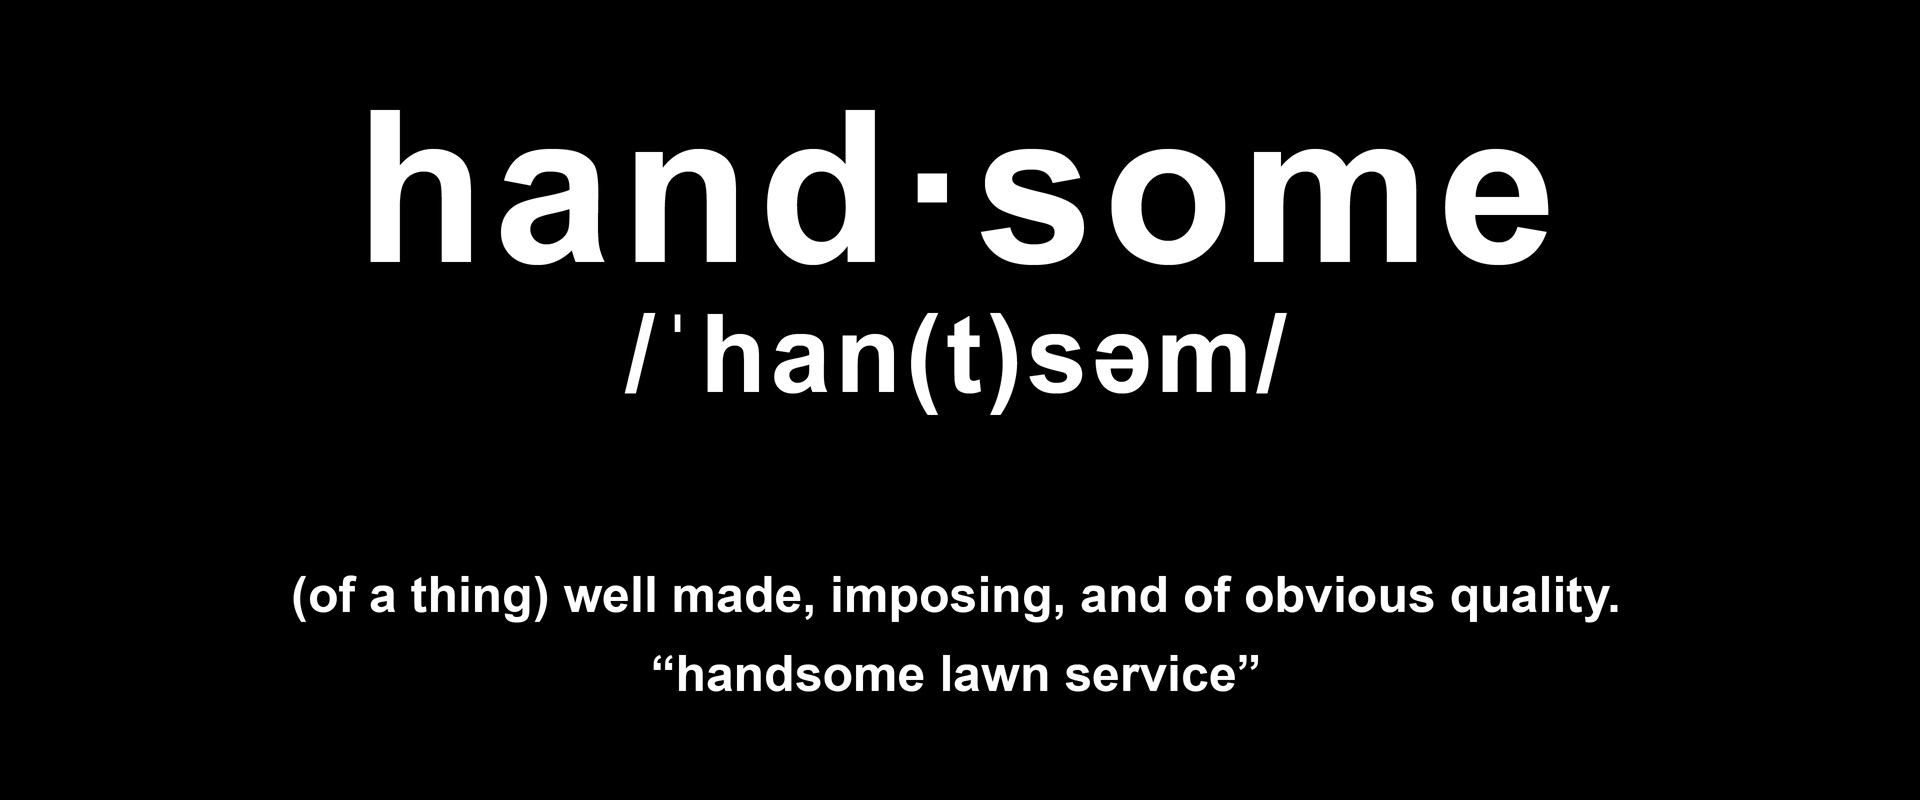 Handsome Lawn Service Definition Slide